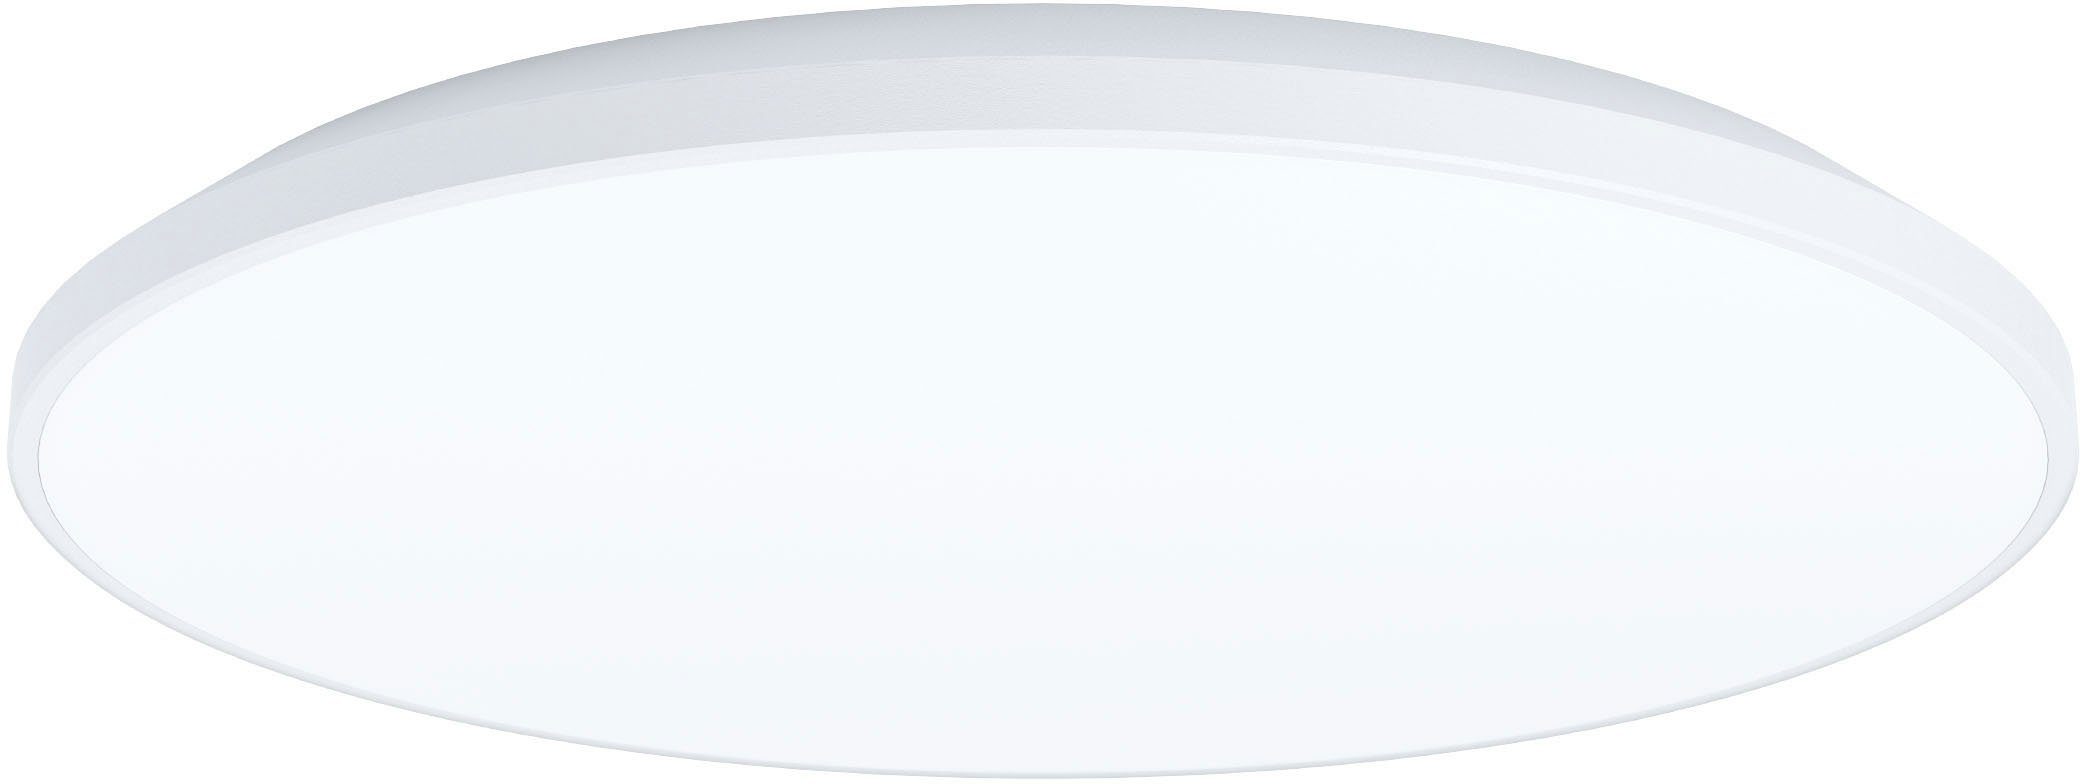 EGLO Deckenleuchte CRESPILLO, LED fest integriert, Neutralweiß, Deckenlampe, Küchenlampe, Bürolampe, LED Aufbaulampe, Lampe, Ø 38 cm | Deckenlampen